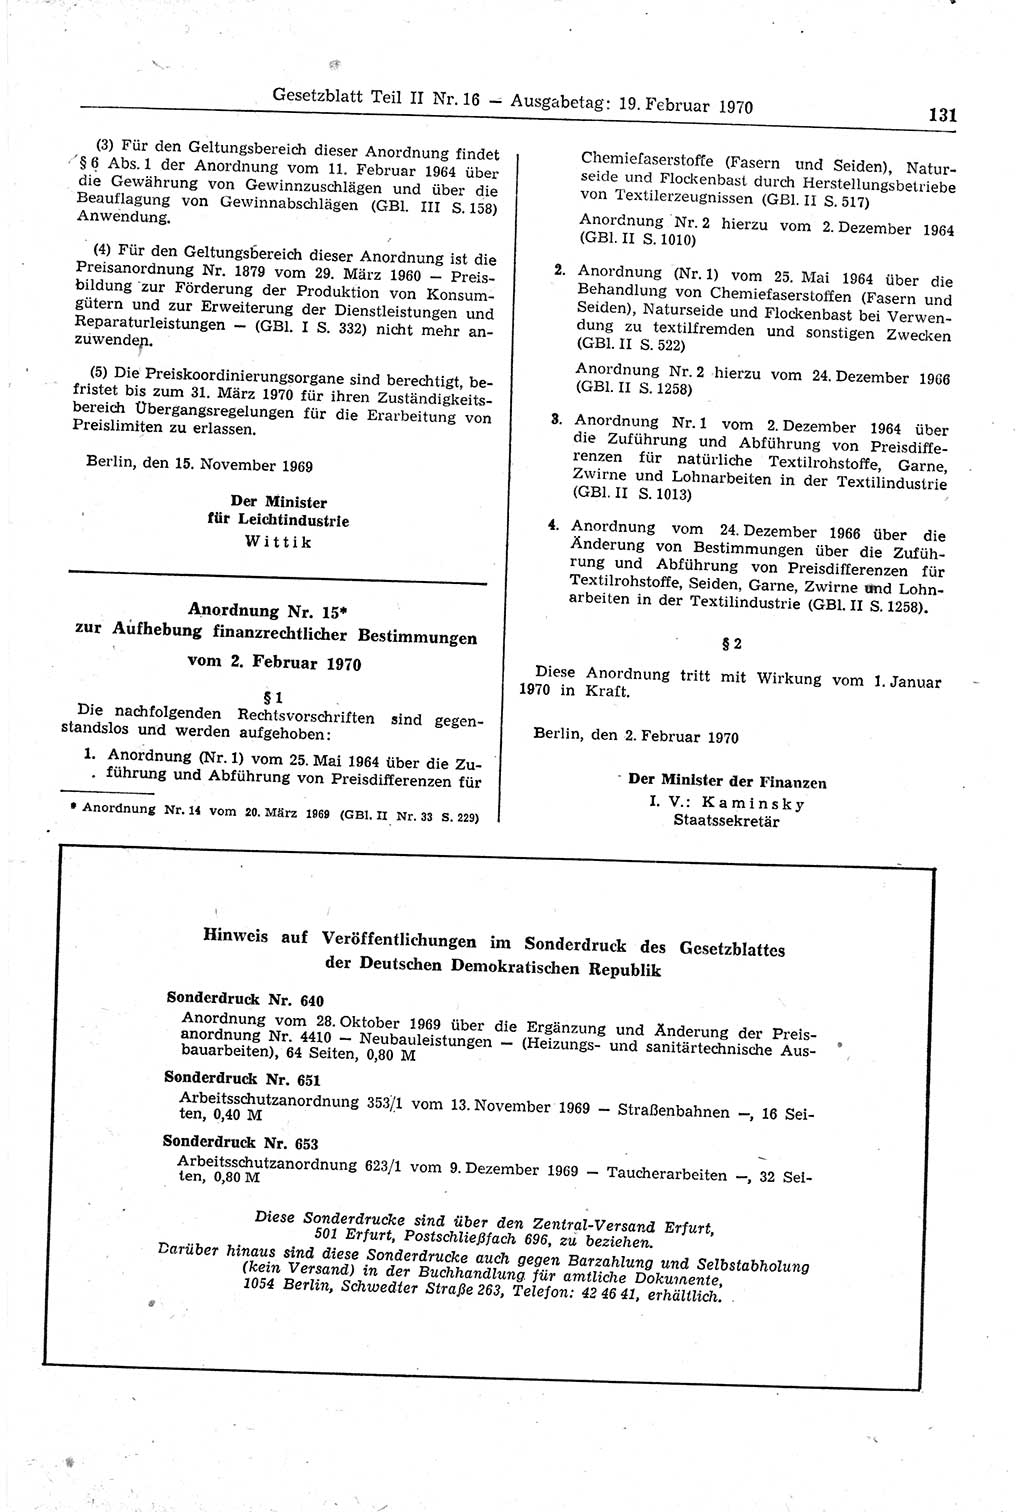 Gesetzblatt (GBl.) der Deutschen Demokratischen Republik (DDR) Teil ⅠⅠ 1970, Seite 131 (GBl. DDR ⅠⅠ 1970, S. 131)